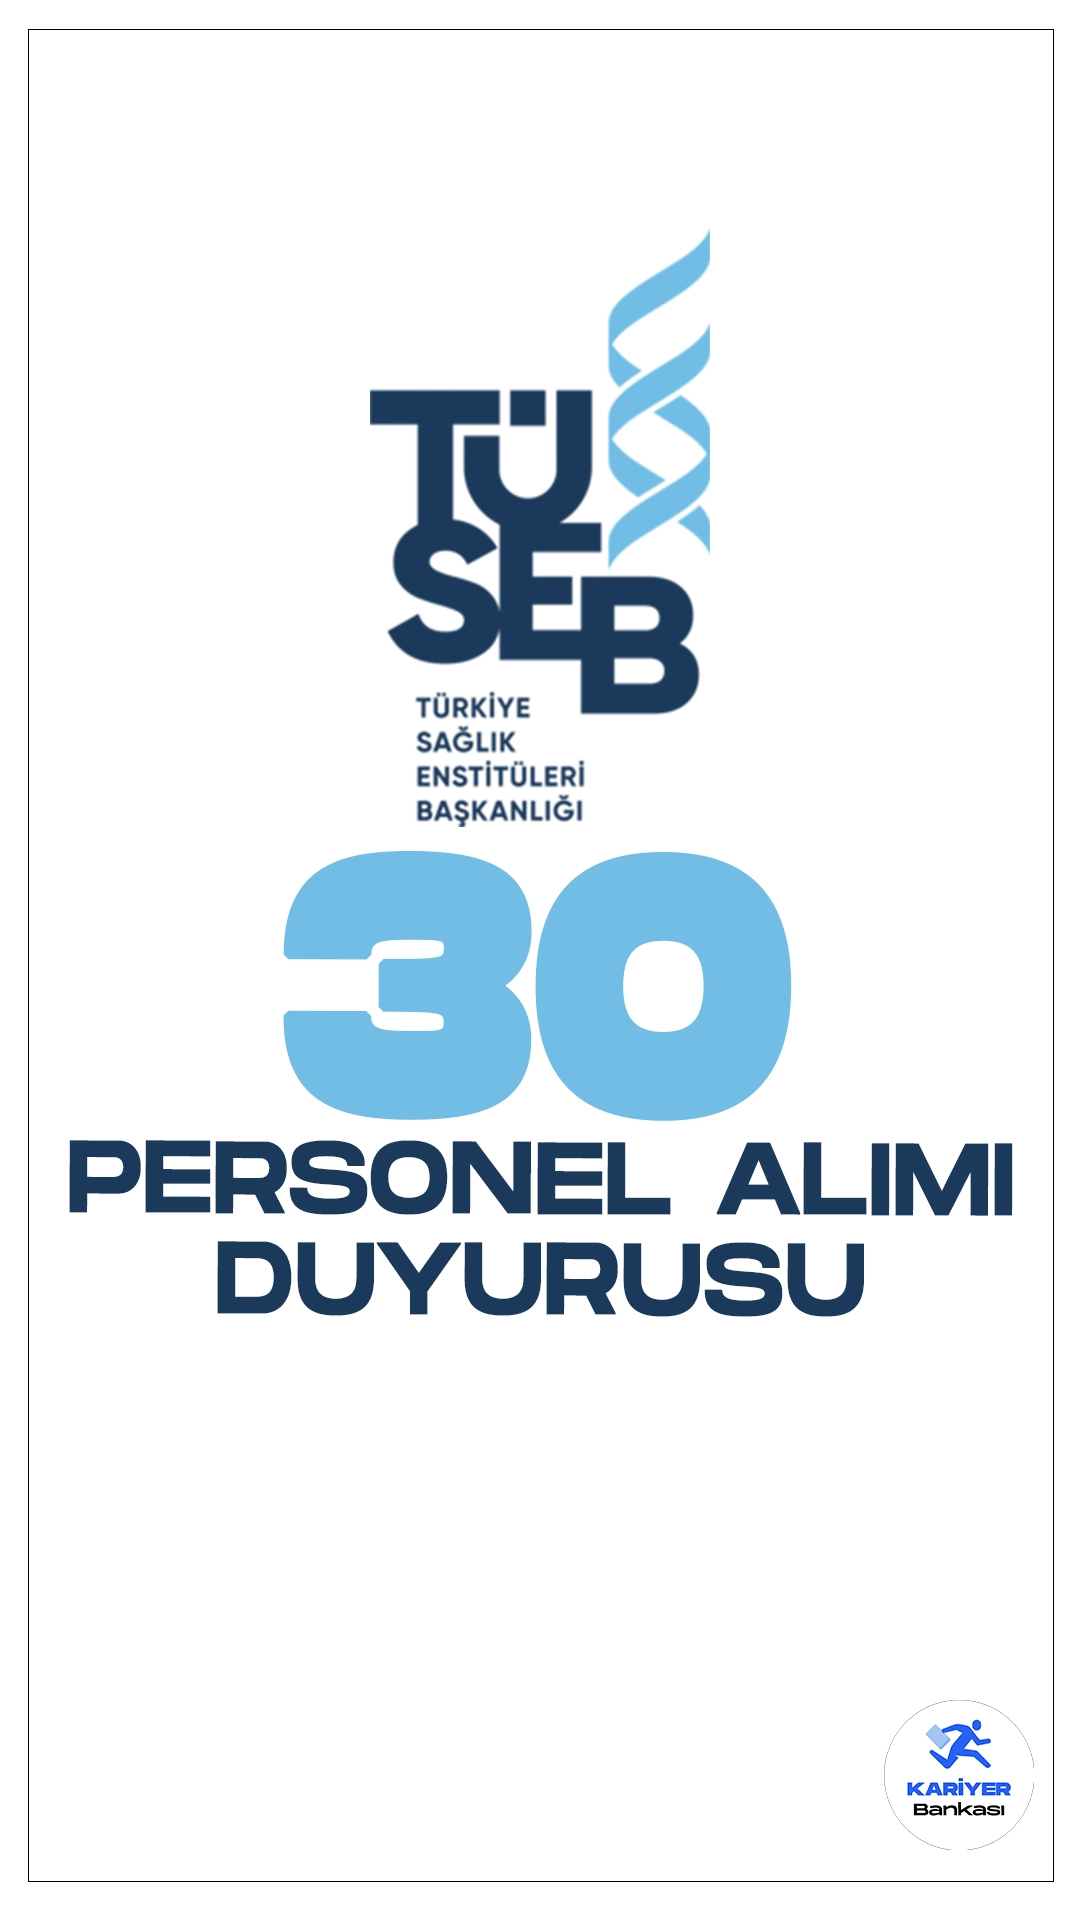 TÜSEB 30 Personel Alımı Duyurusu Yayımlandı. Resmi Gazete'de yayımlanan duyuruda, Türkiye Sağlık Enstitüleri Başkanlığına (TÜSEB) koruma ve güvenlik görevlisi, hizmet ve şoför ünvanlarında personel alımı yapılacağı aktarıldı. Kontenjan dağılımı ve başvuru bilgilerine dair detaylar bu haberimizde.